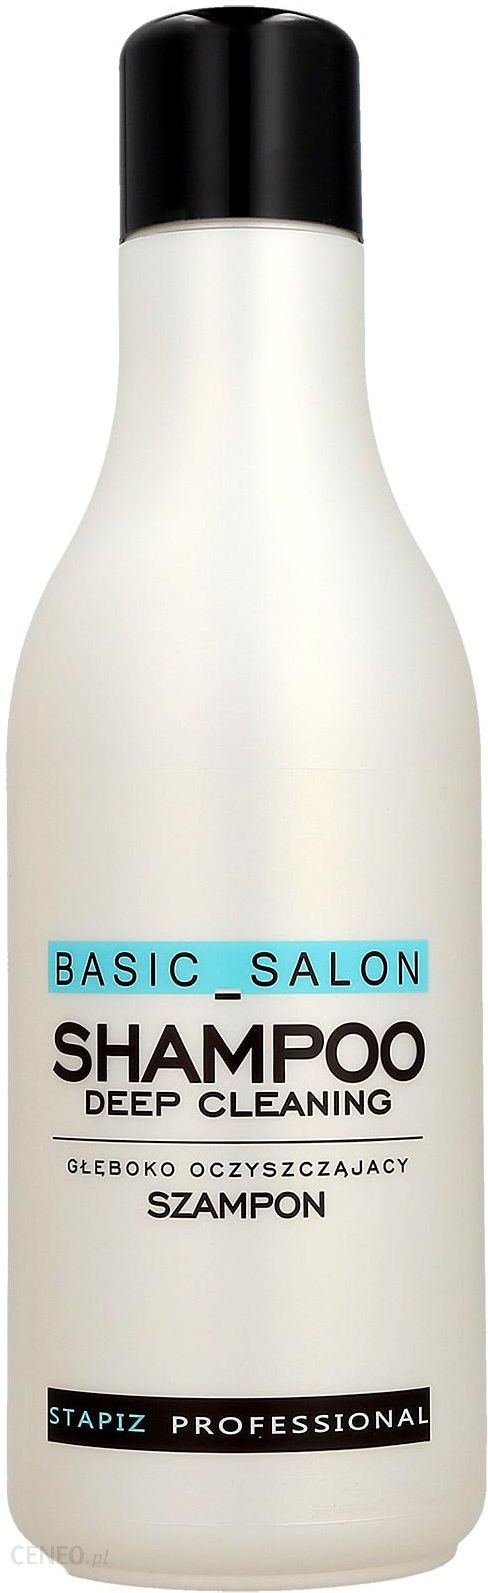 Stapiz Cleaning Shampoo szampon głęboko oczyszczający 1000ml